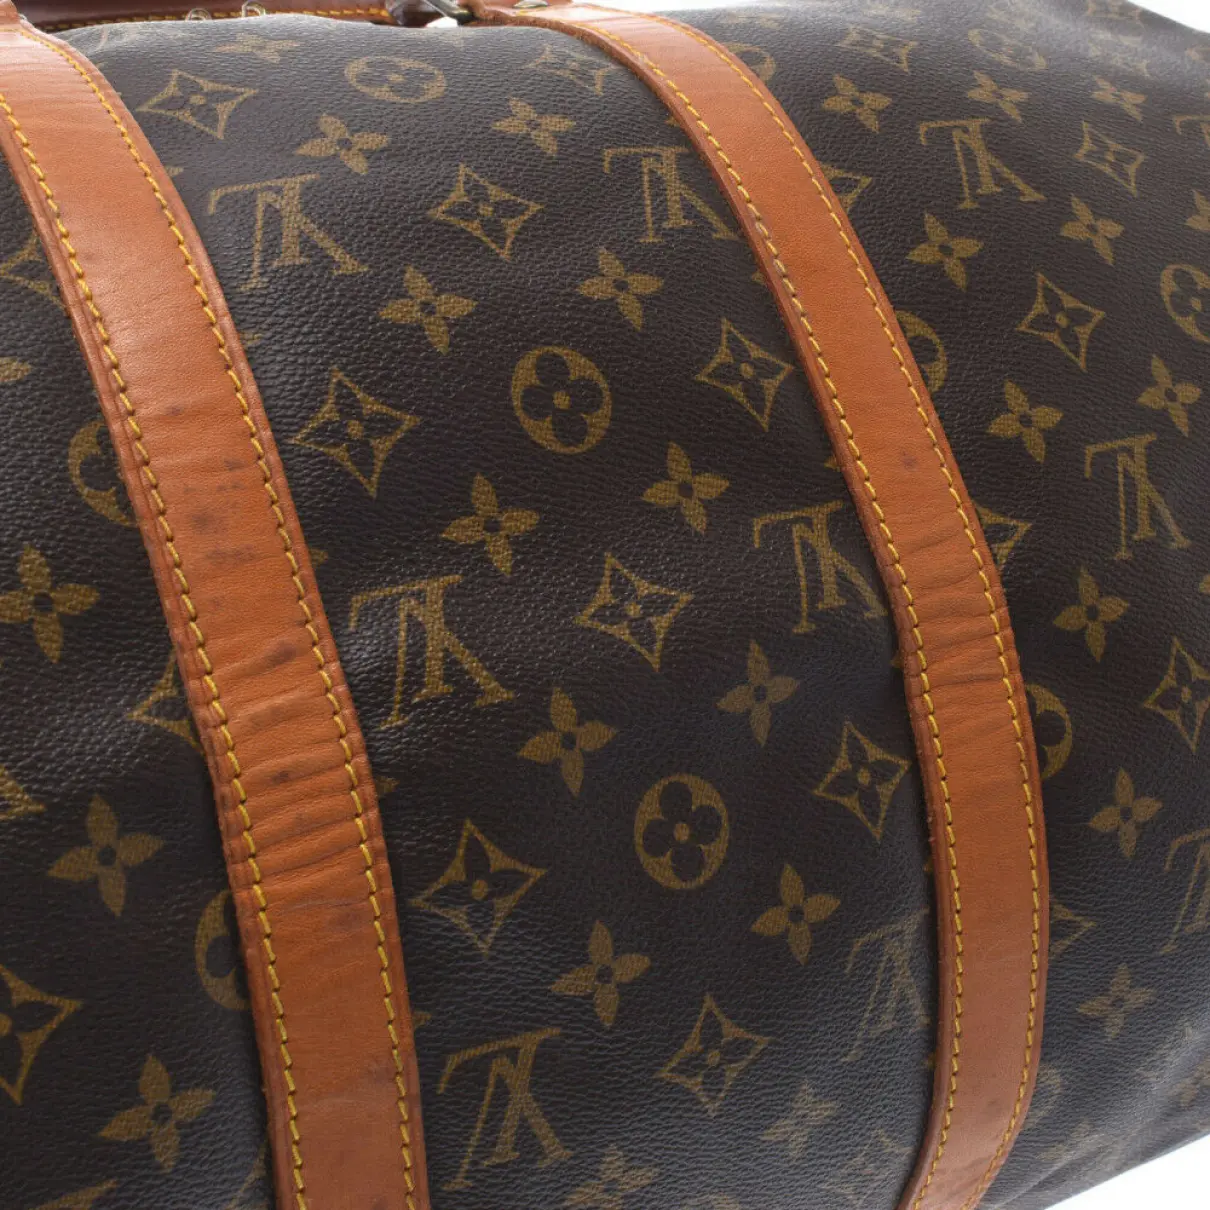 Keepall cloth travel bag Louis Vuitton